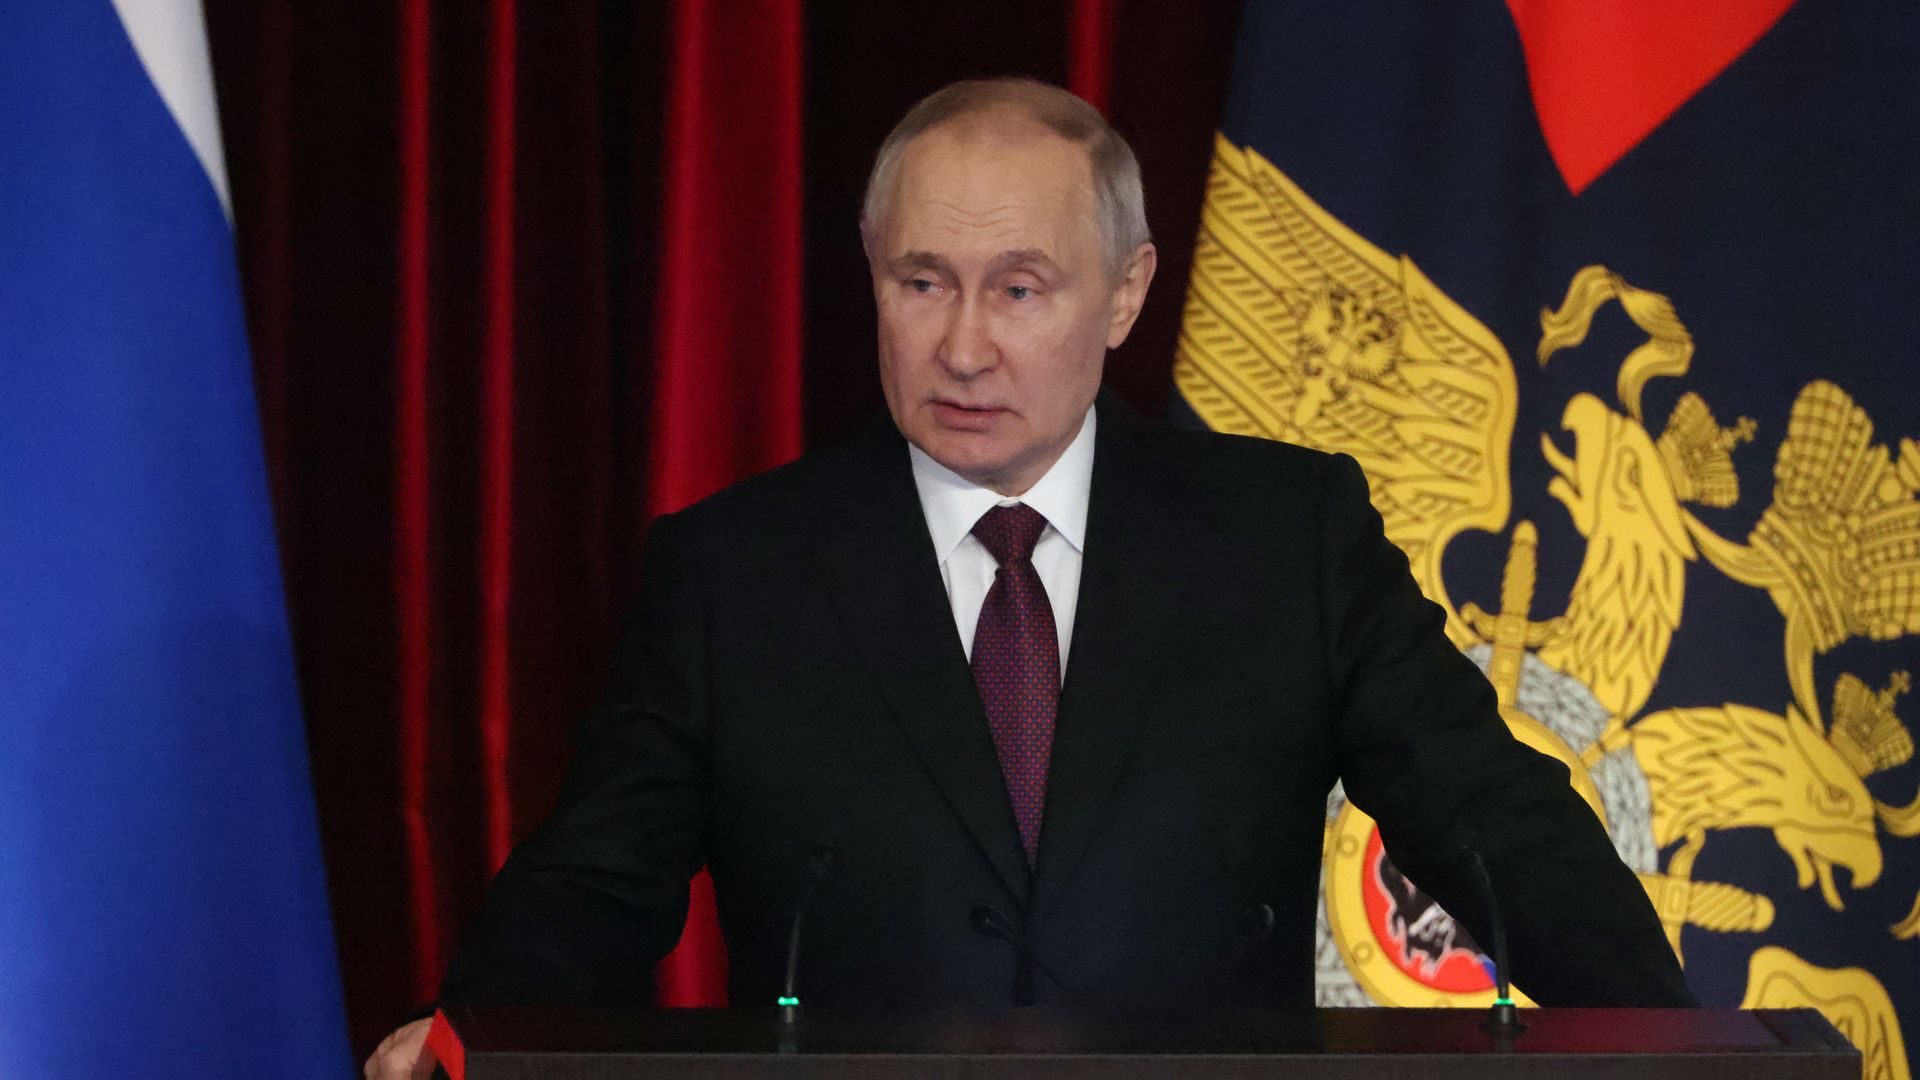 Russian President Vladimir Putin giving a speech